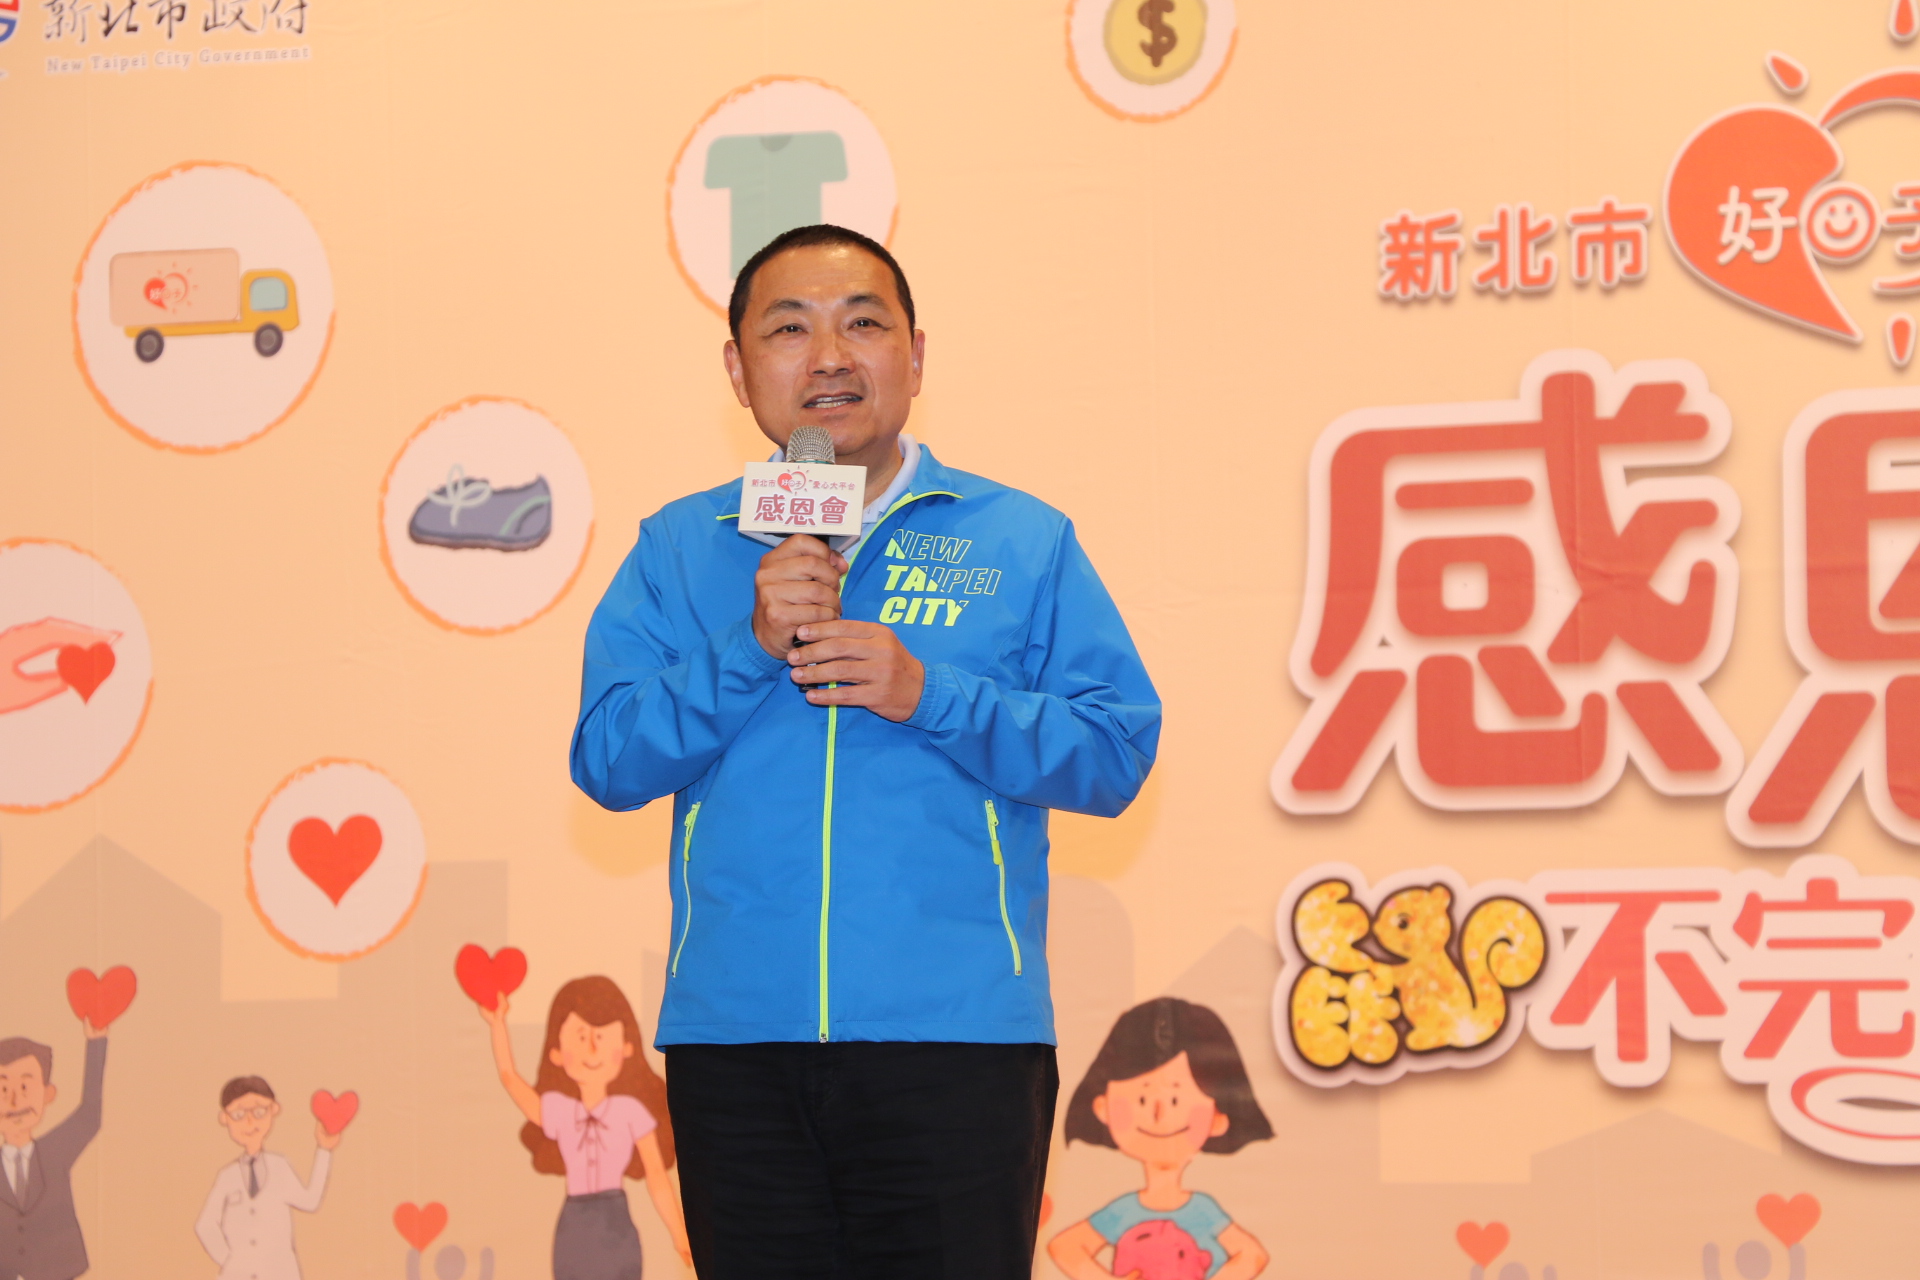 侯友宜說  愛心大平台正是展現台灣人善良、正向和樸實的精神